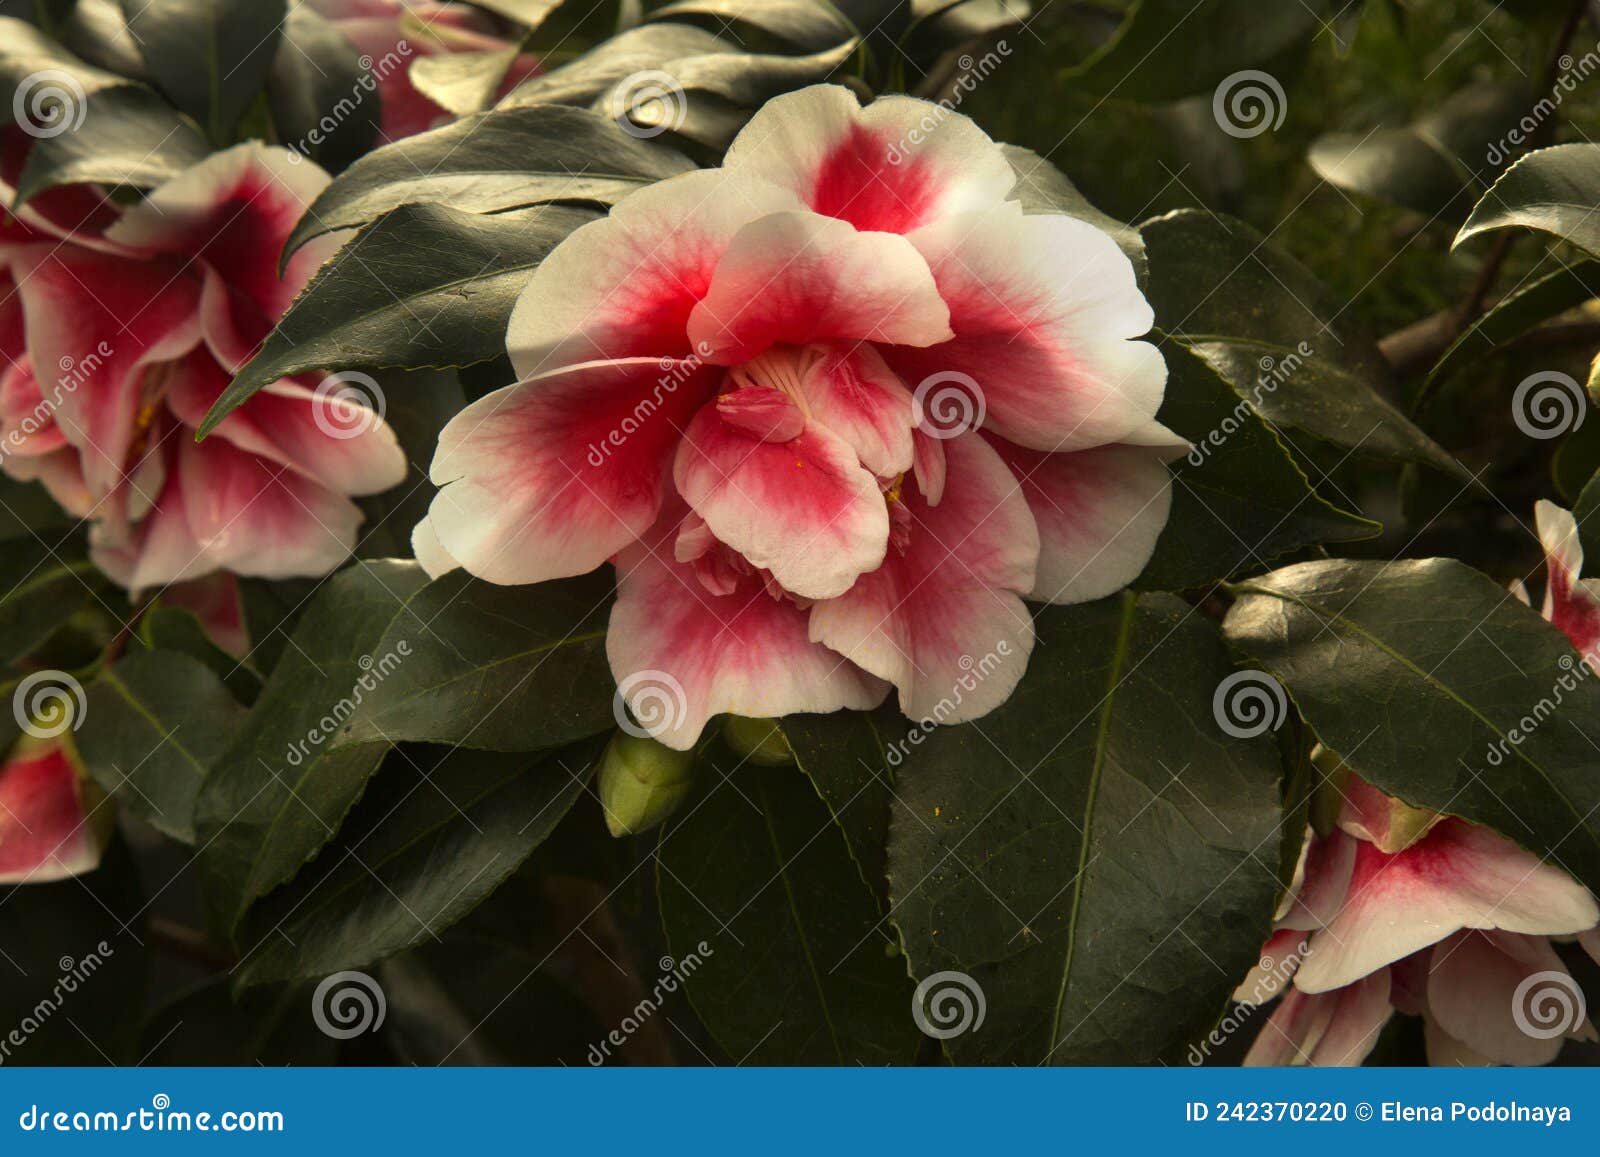 common camellia, japanese camellia. camellia japonica `toma aneka`.